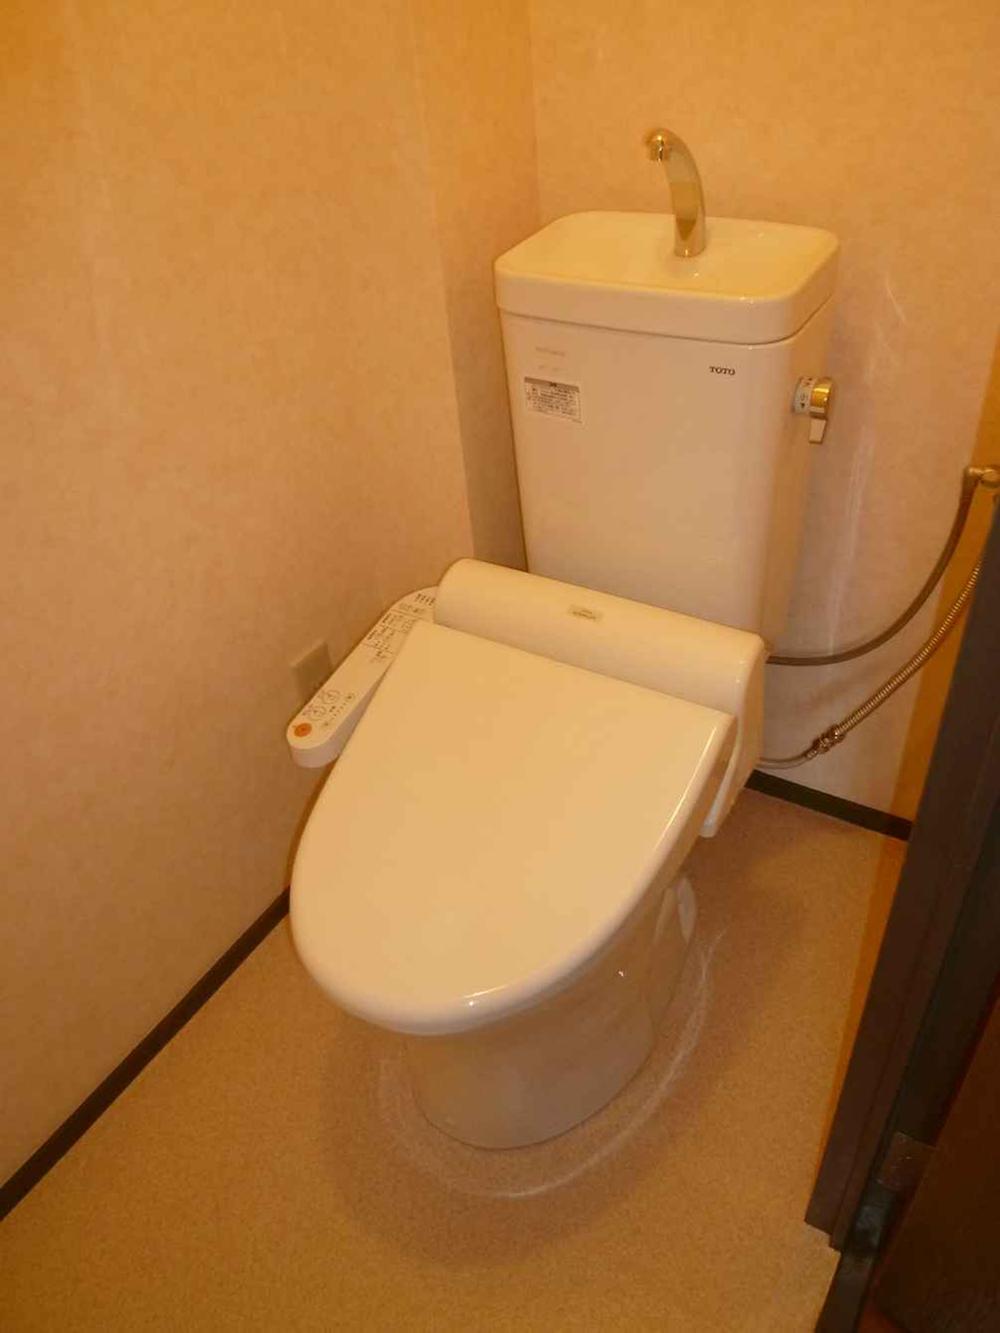 Toilet. Toilet bowl, tank, Also had made warm water washing toilet seat